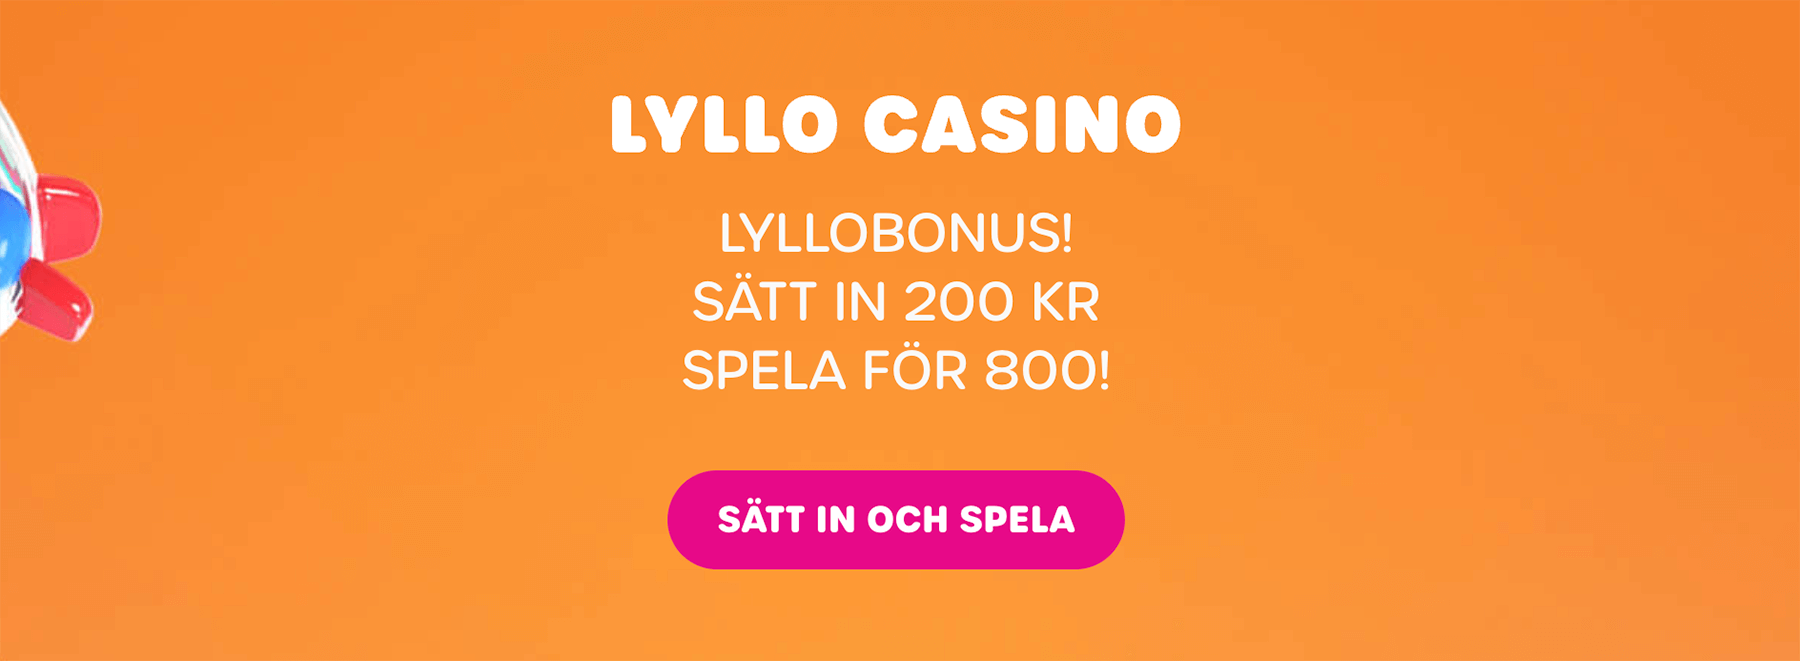 Lyllo Casino bonus